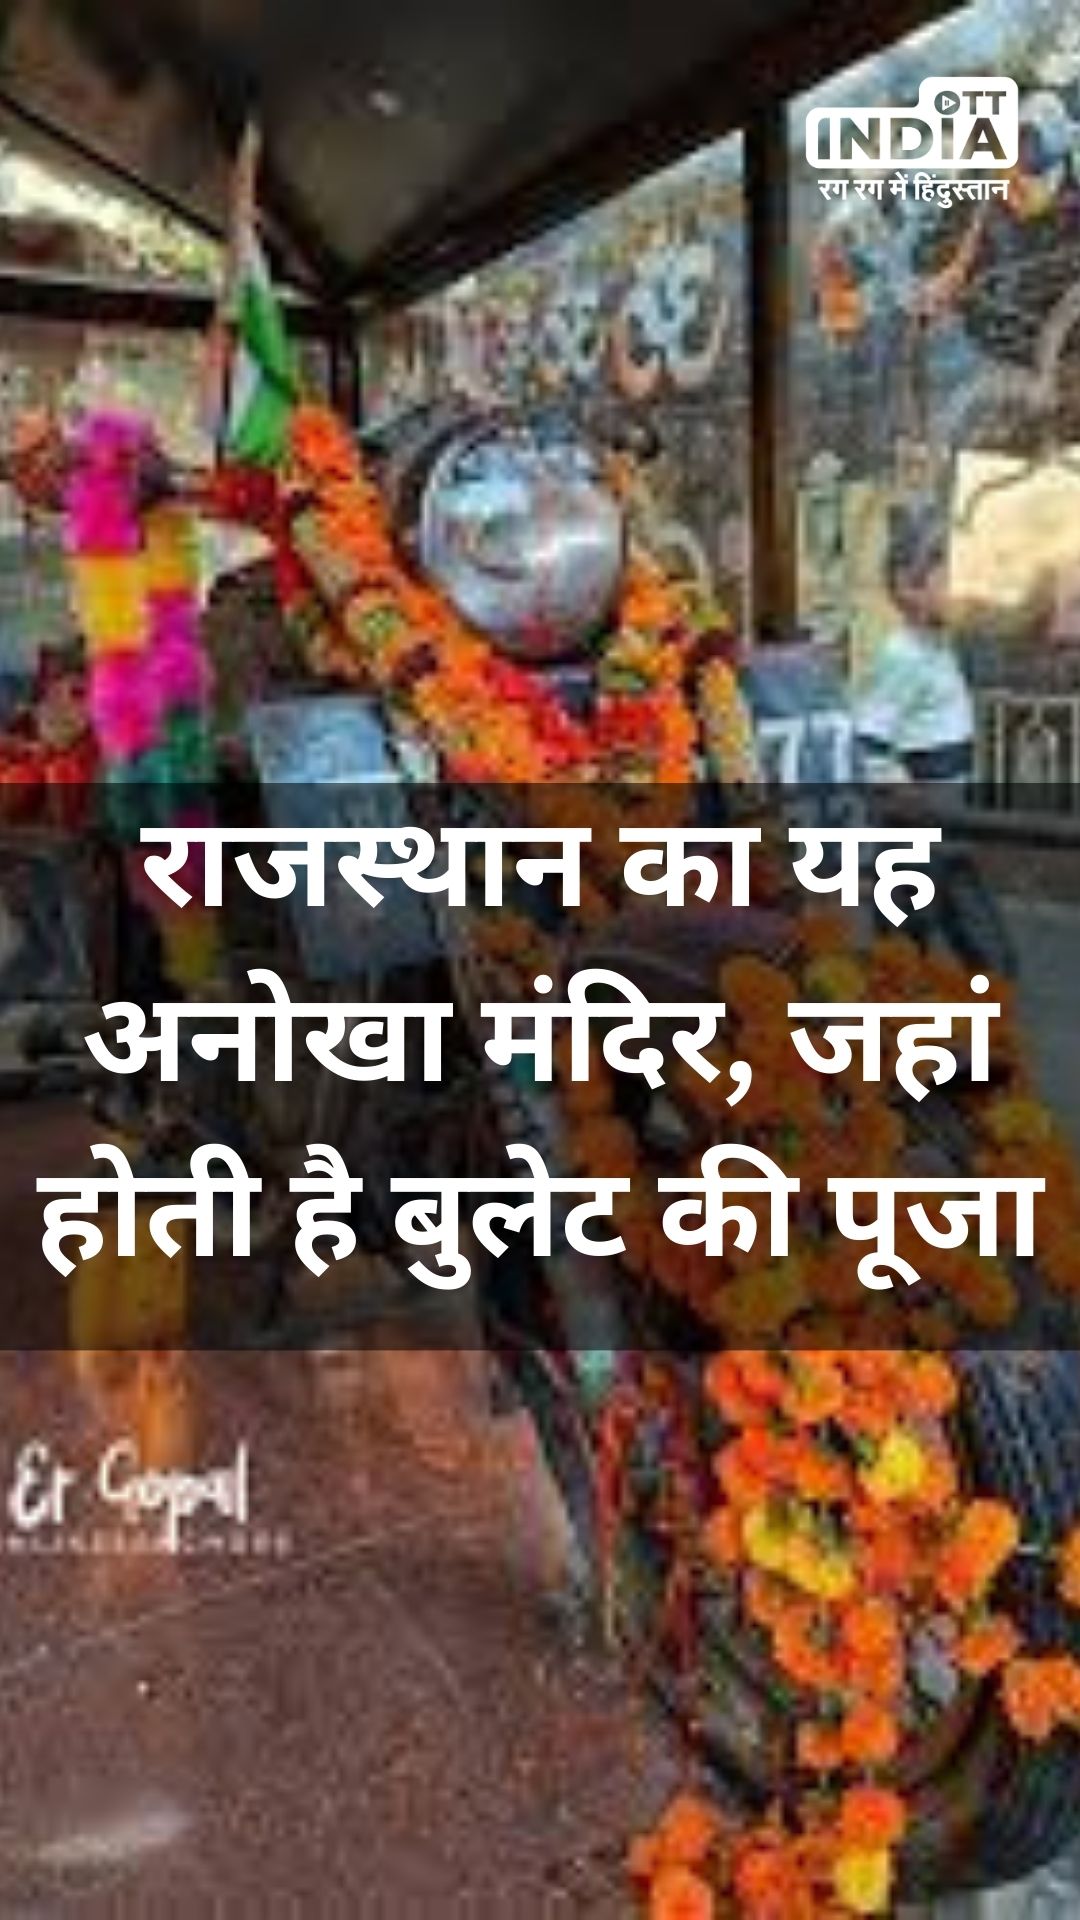 OM Banna Temple: राजस्थान का यह अनोखा मंदिर, जहां होती है बुलेट की पूजा